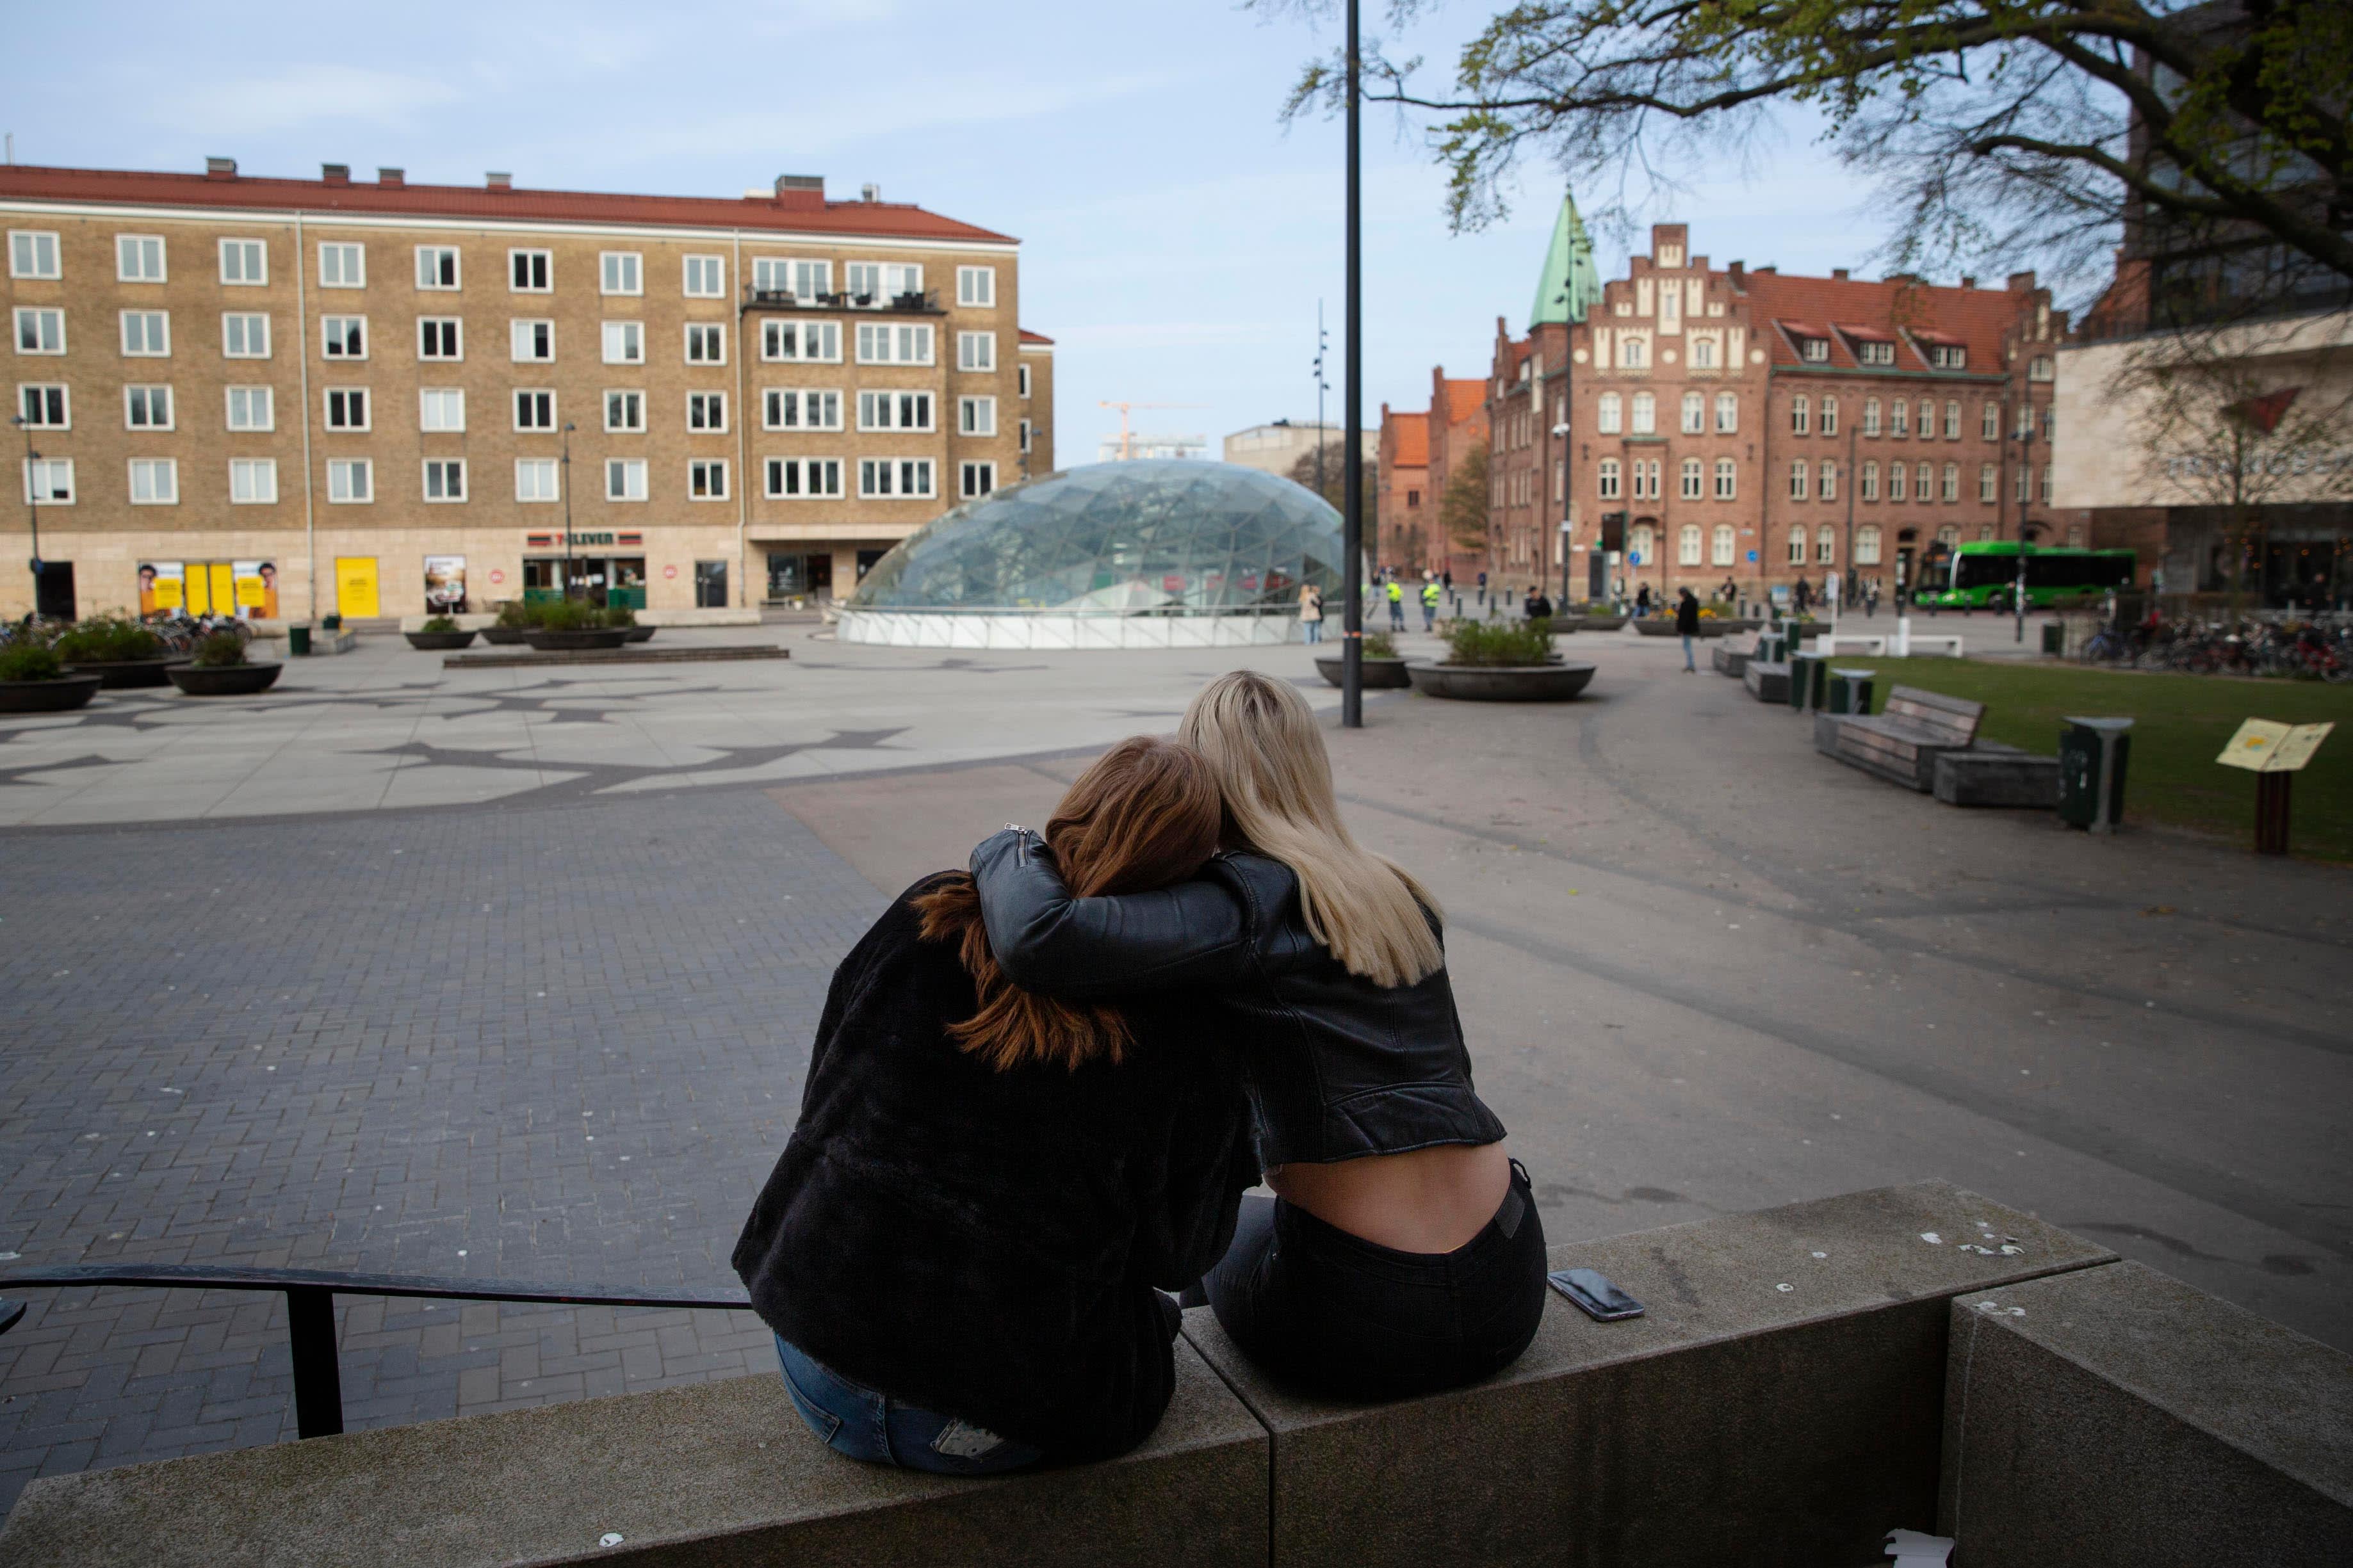 suomalaiset naiset etsii miestä tukholma kauniita naisia etsii seksiseuraa kristiinankaupunki